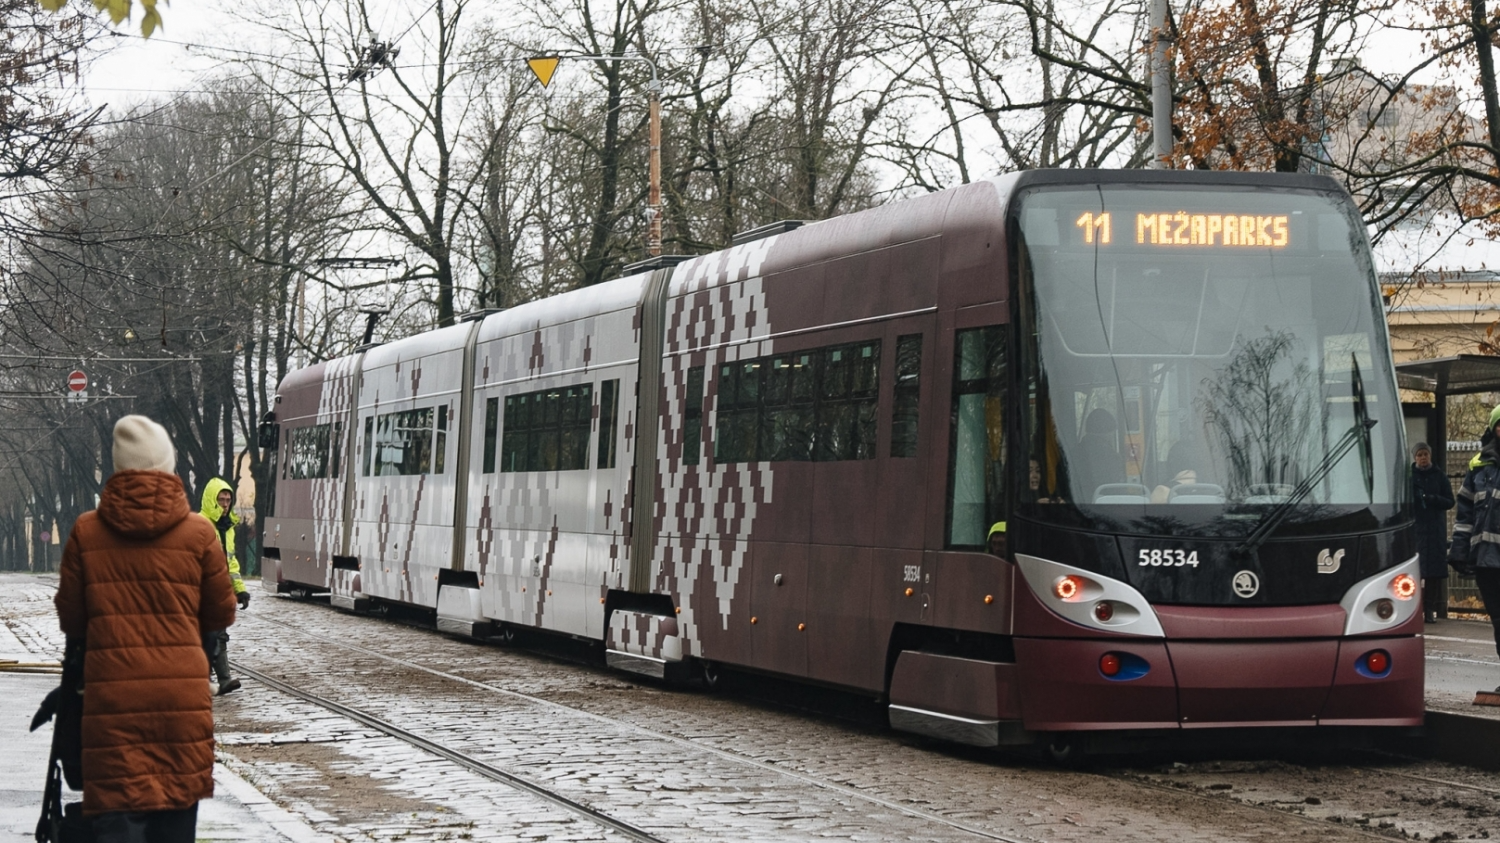 Valsts svētkos, 18. novembrī, Rīgas pilsētas sabiedriskais transports un autostāvvietas būs bez maksas